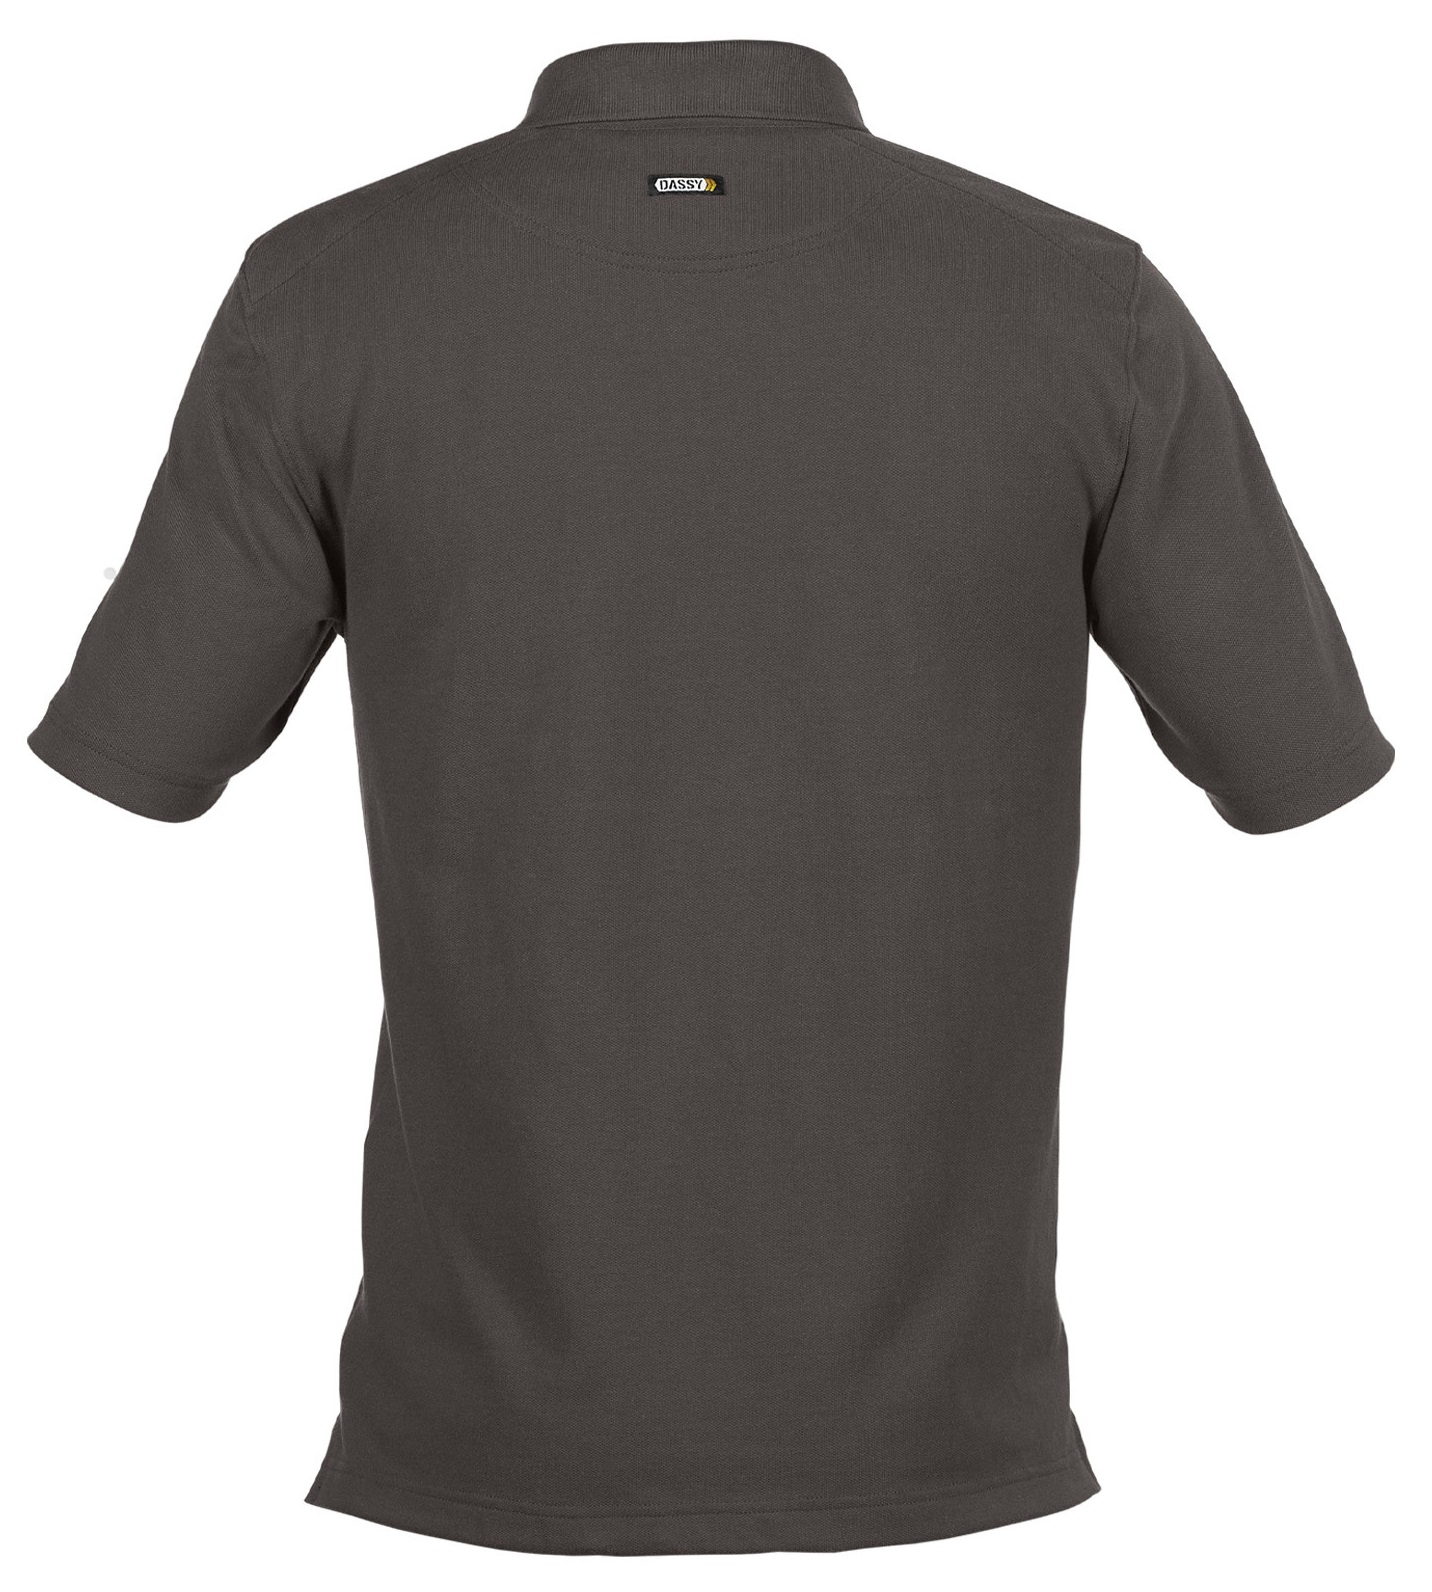 DASSY Hugo Polo-Shirt für häufige Industriereinigungen